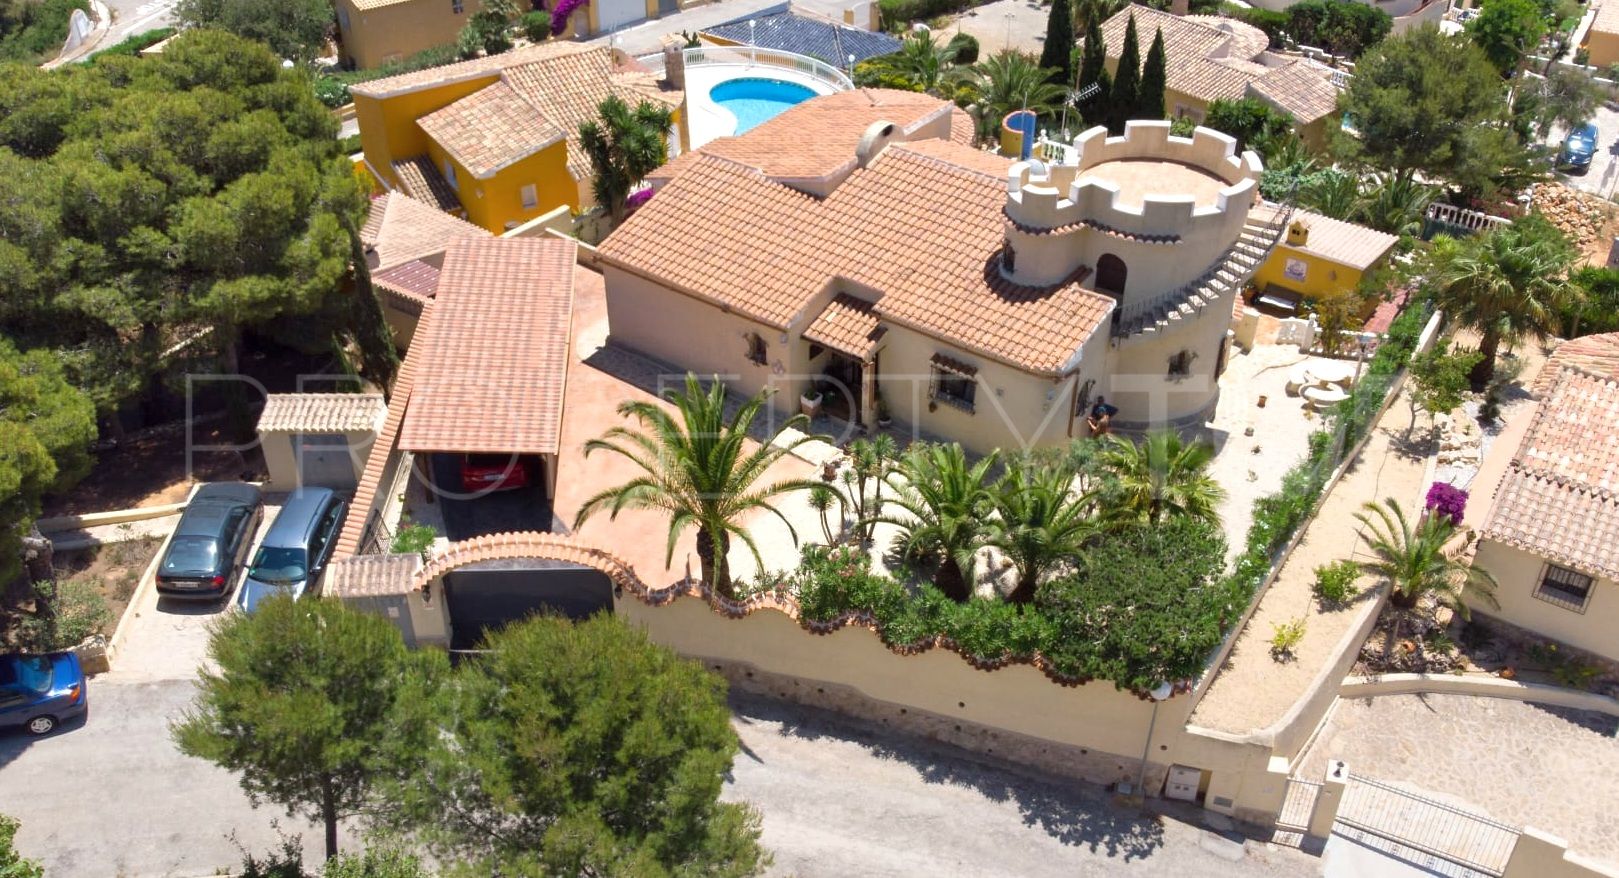 4 bedrooms villa in Cumbre del Sol for sale